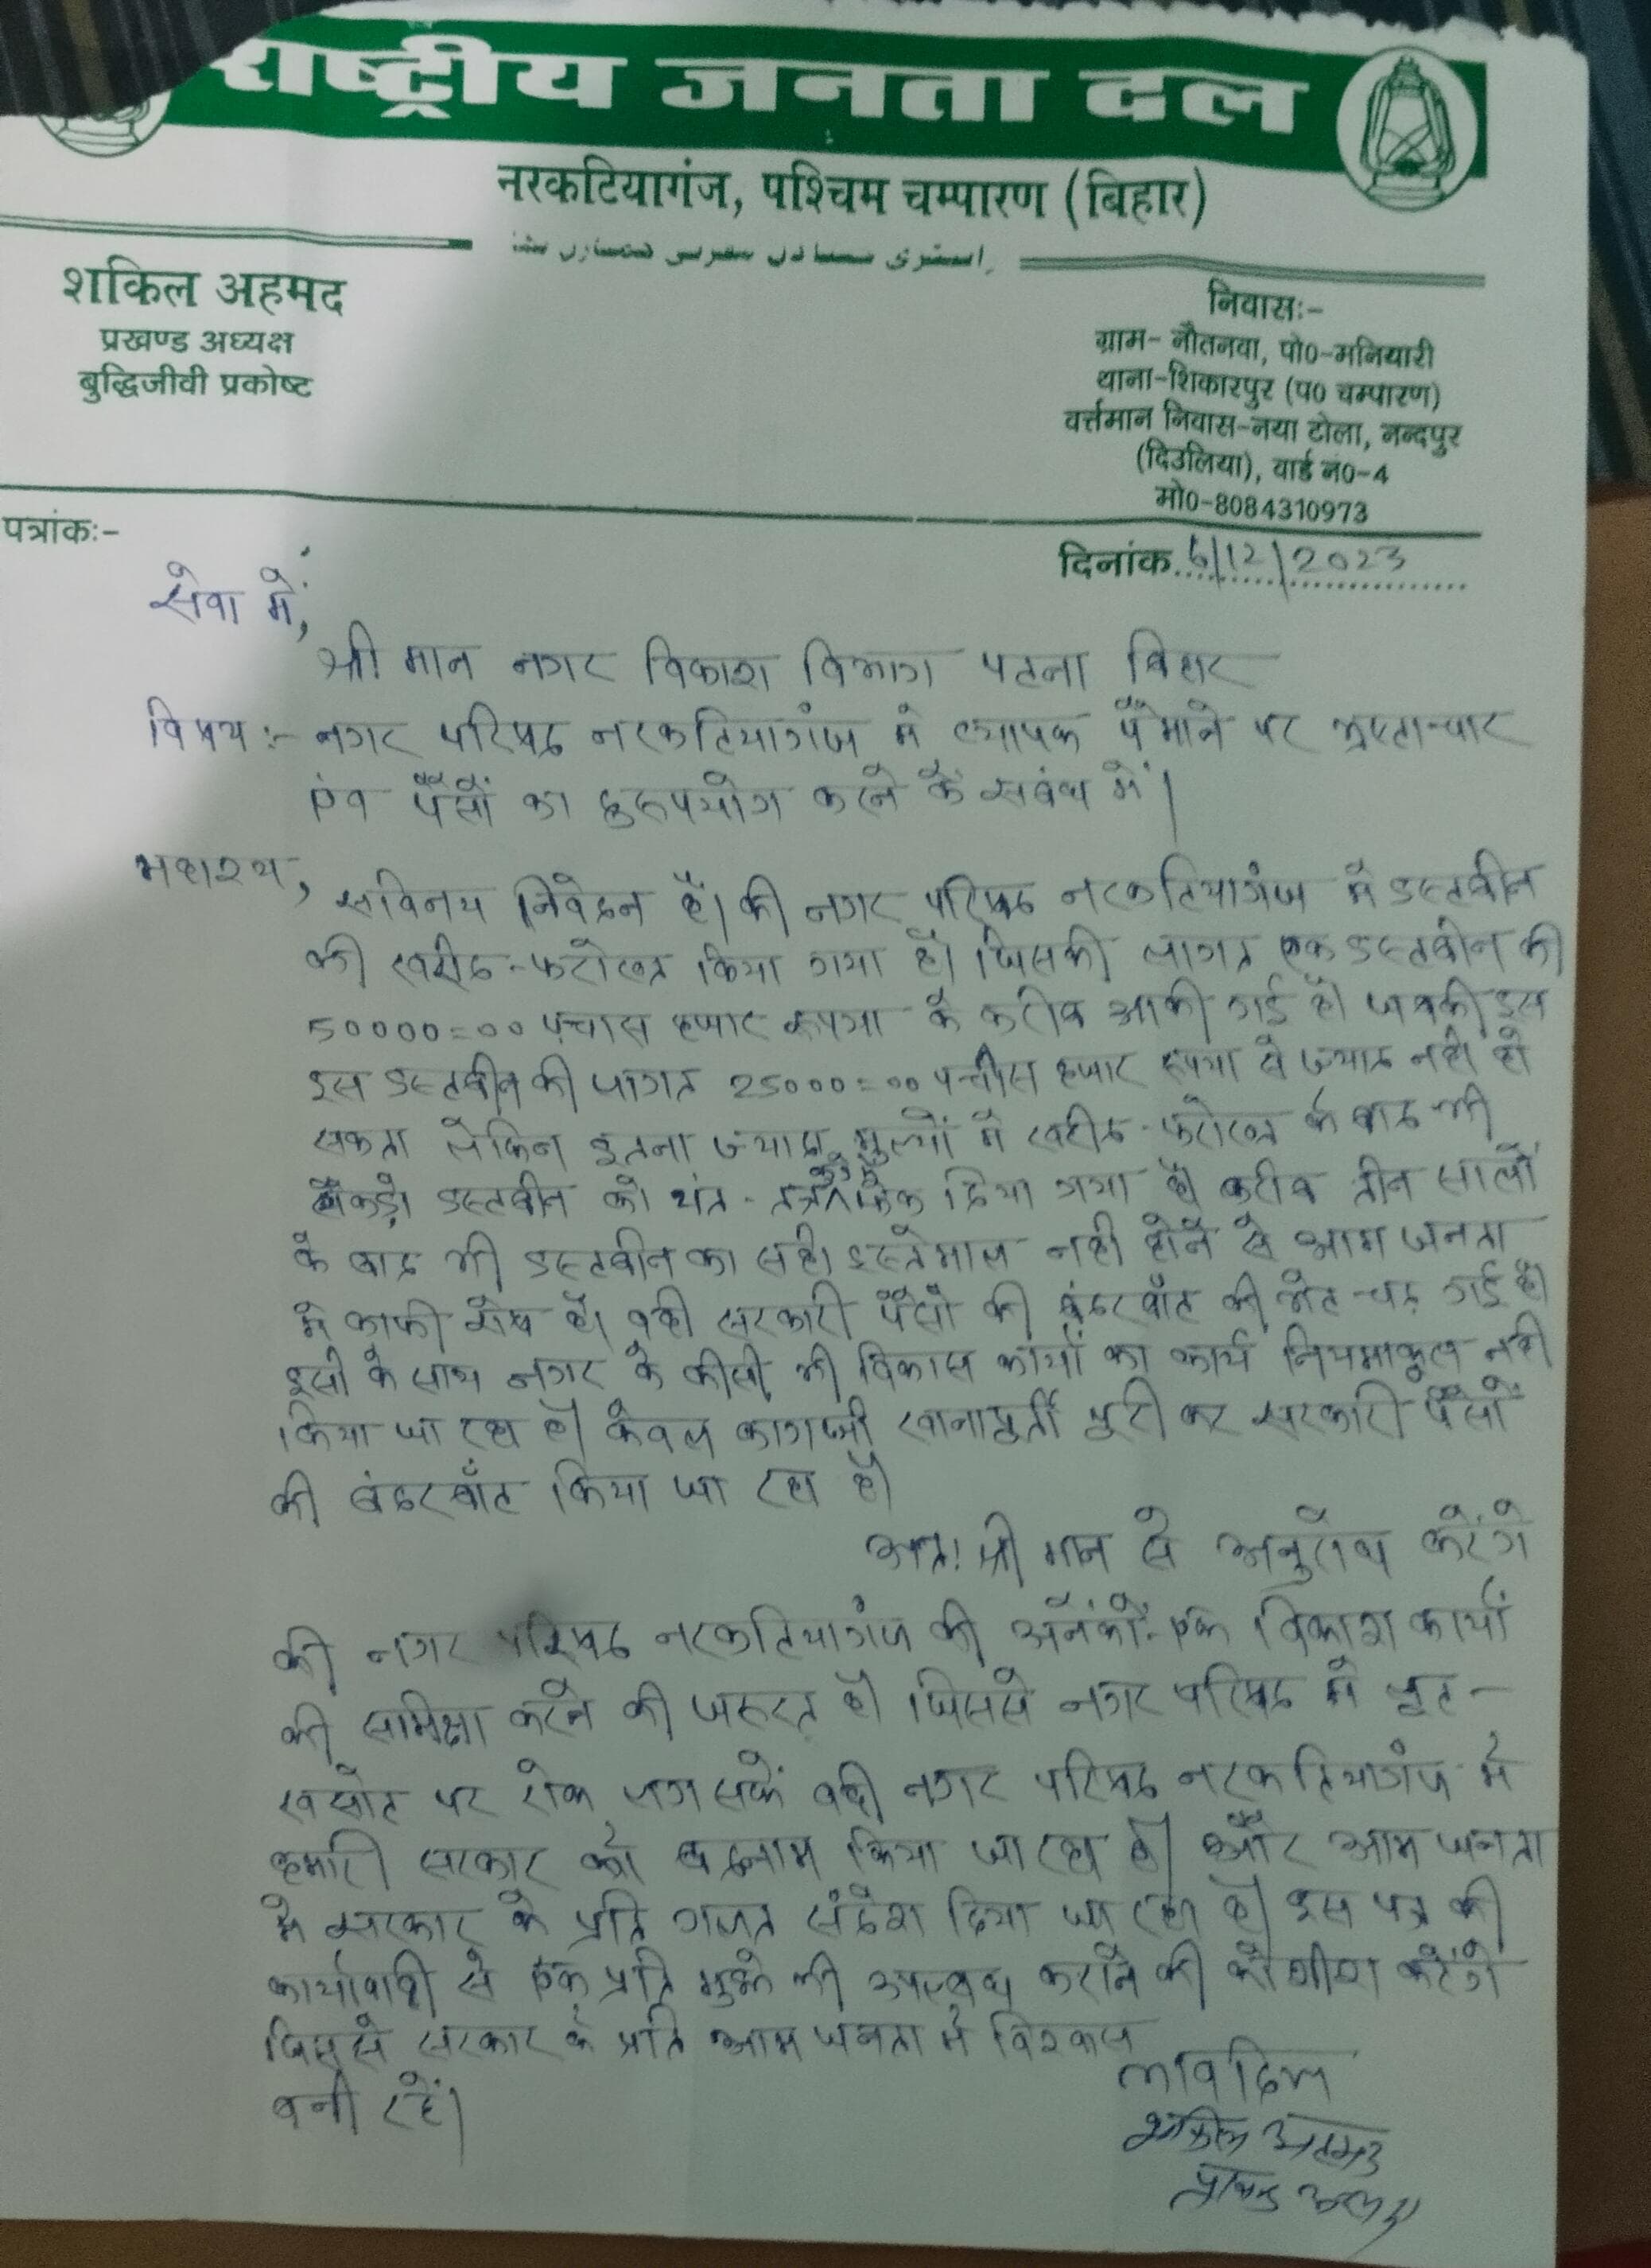 पटना नगर विकास विभाग को पत्र लिख जांच की मांग